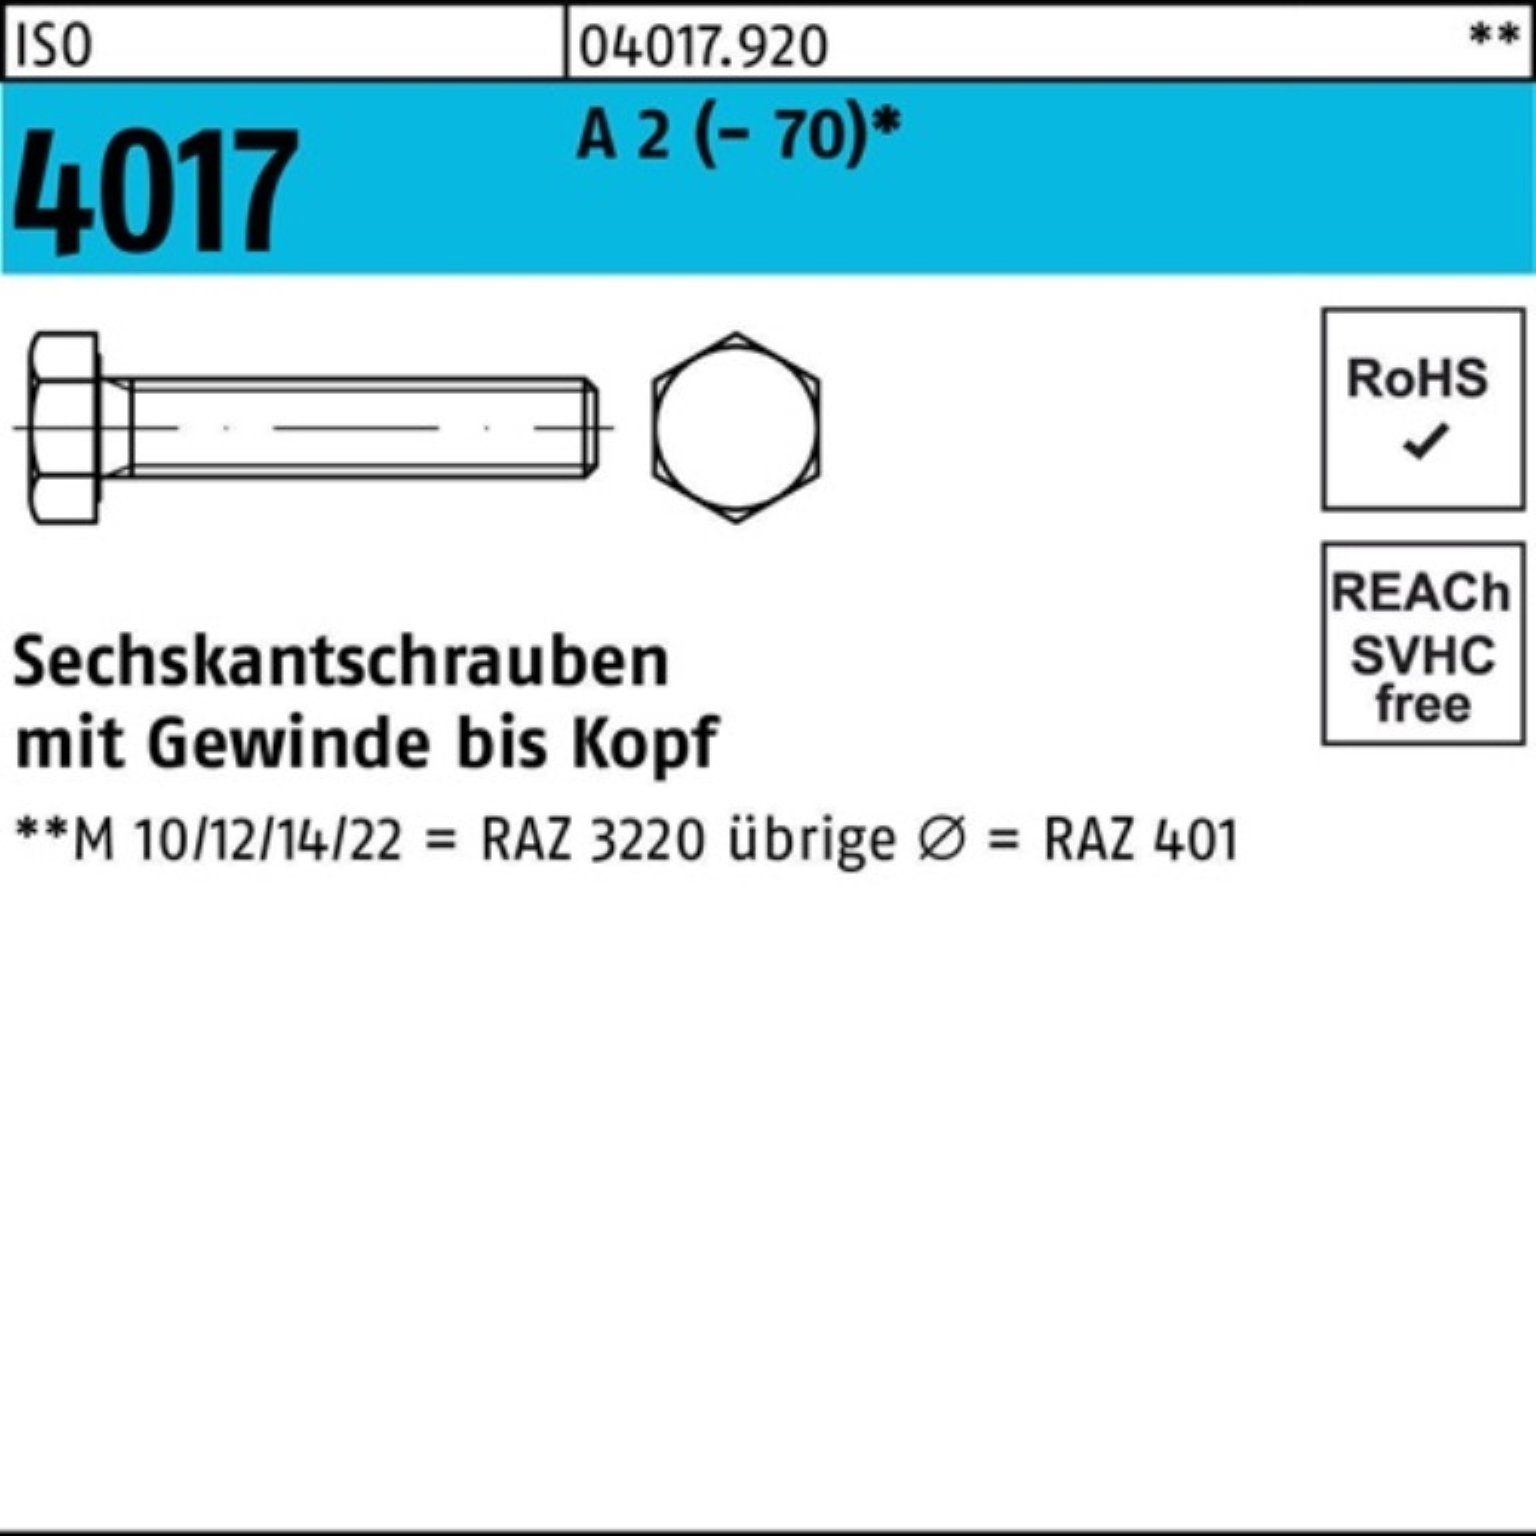 VG Pack Stück Sechskantschraube 100 100er Sechskantschraube Bufab 4017 (70) M3x A 2 ISO 10